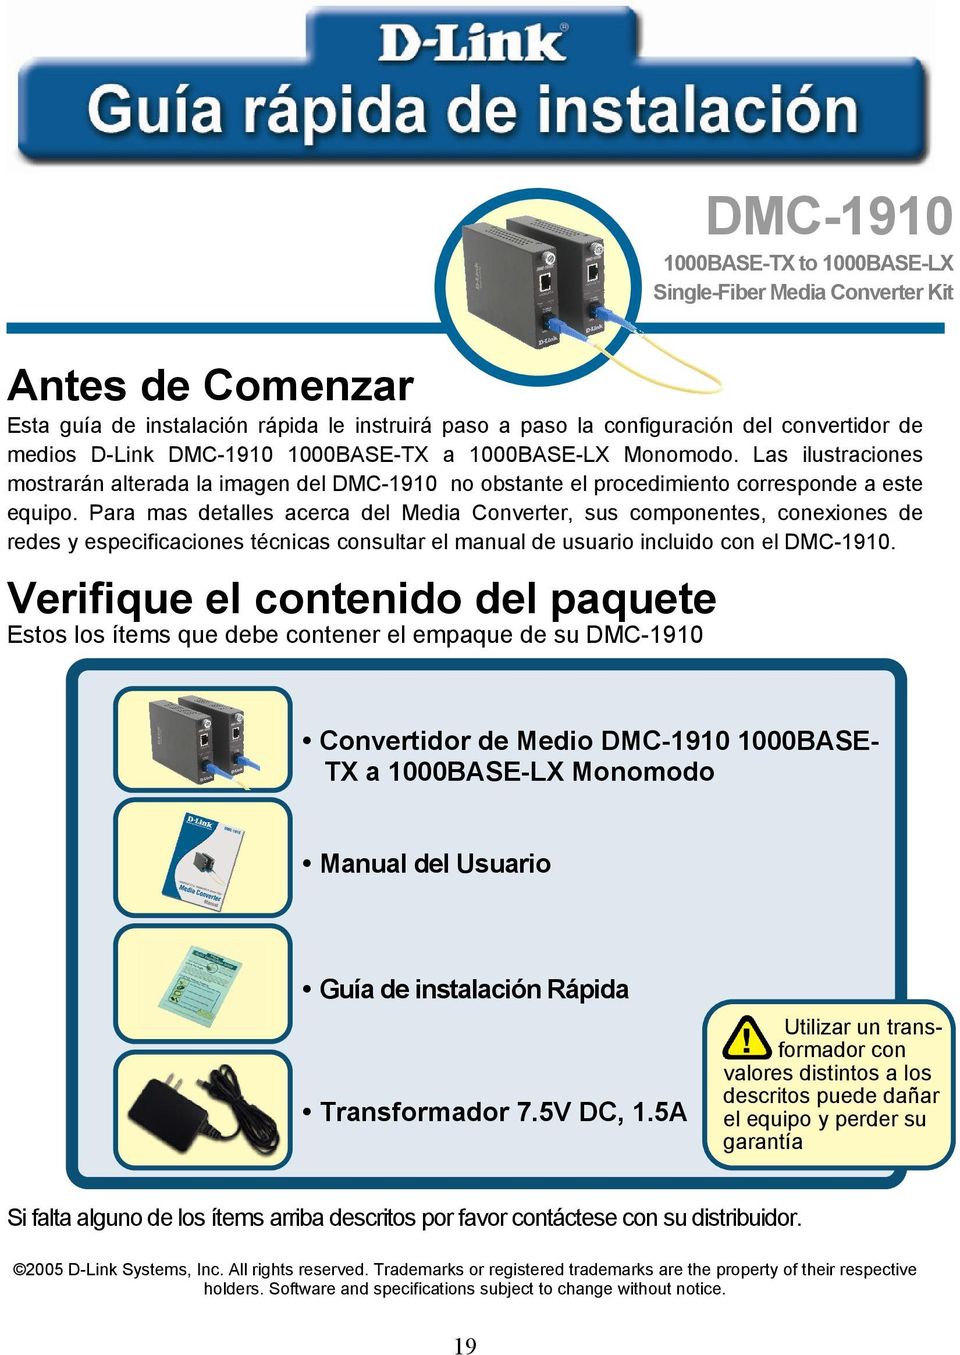 Para mas detalles acerca del Media Converter, sus componentes, conexiones de redes y especificaciones técnicas consultar el manual de usuario incluido con el DMC-1910.